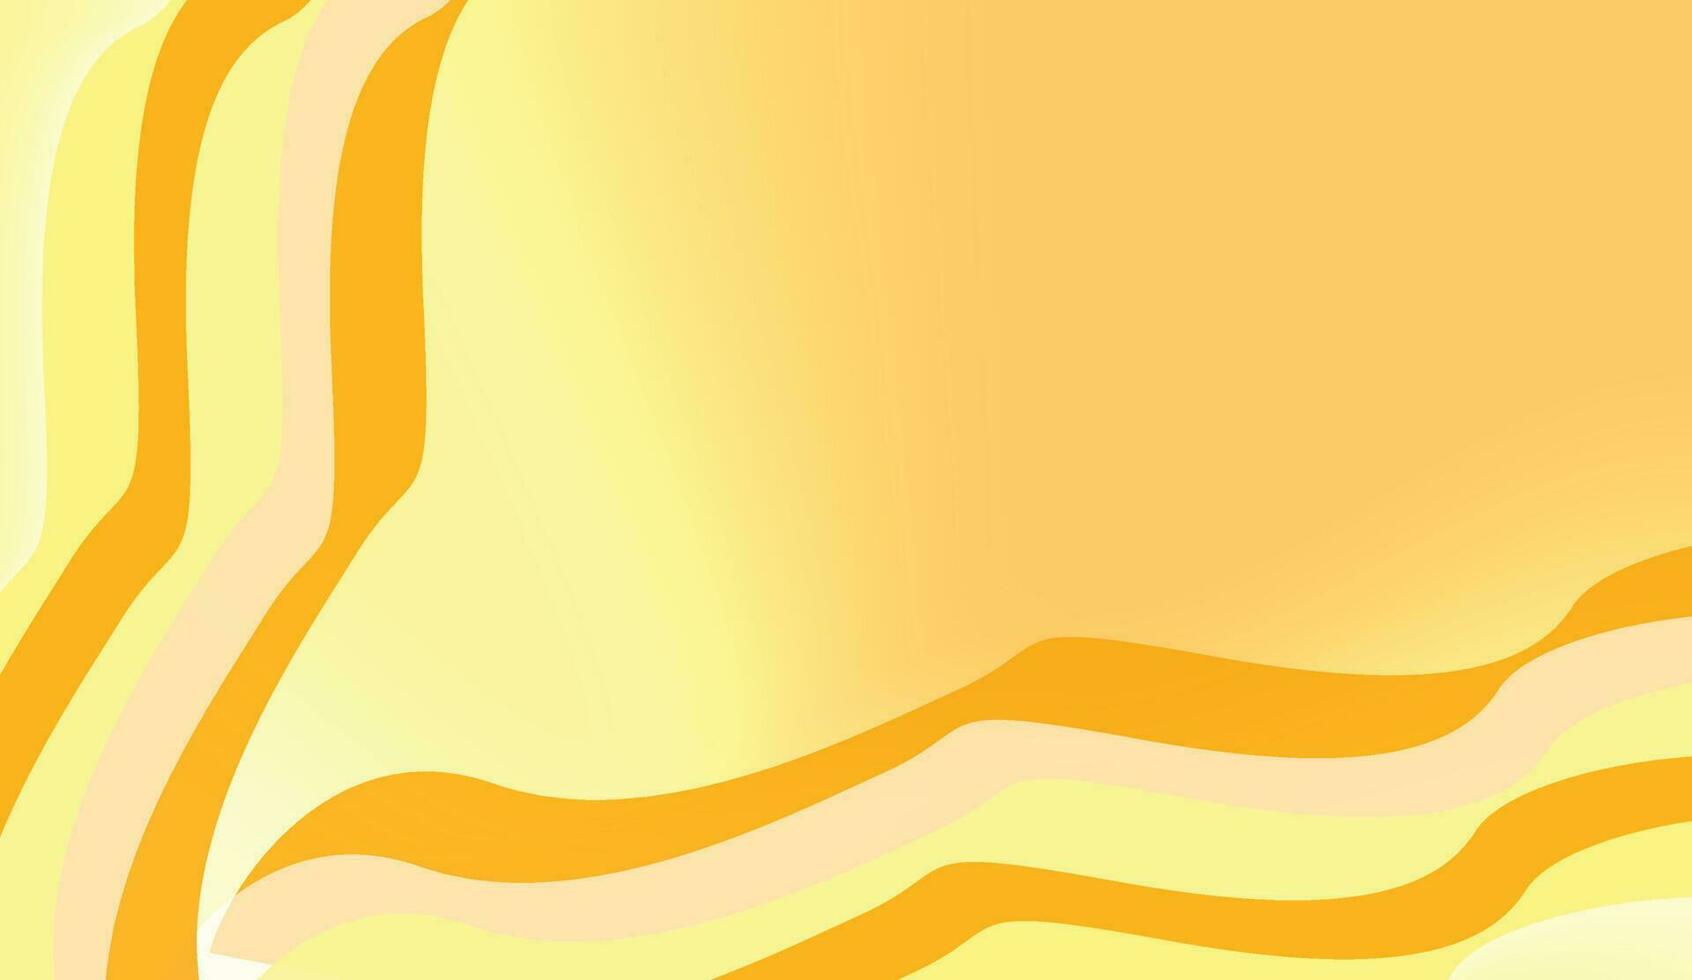 astratto minimo sfondo con arancia colore dinamico leggero ombra linea custode luminosa sfondo vettore